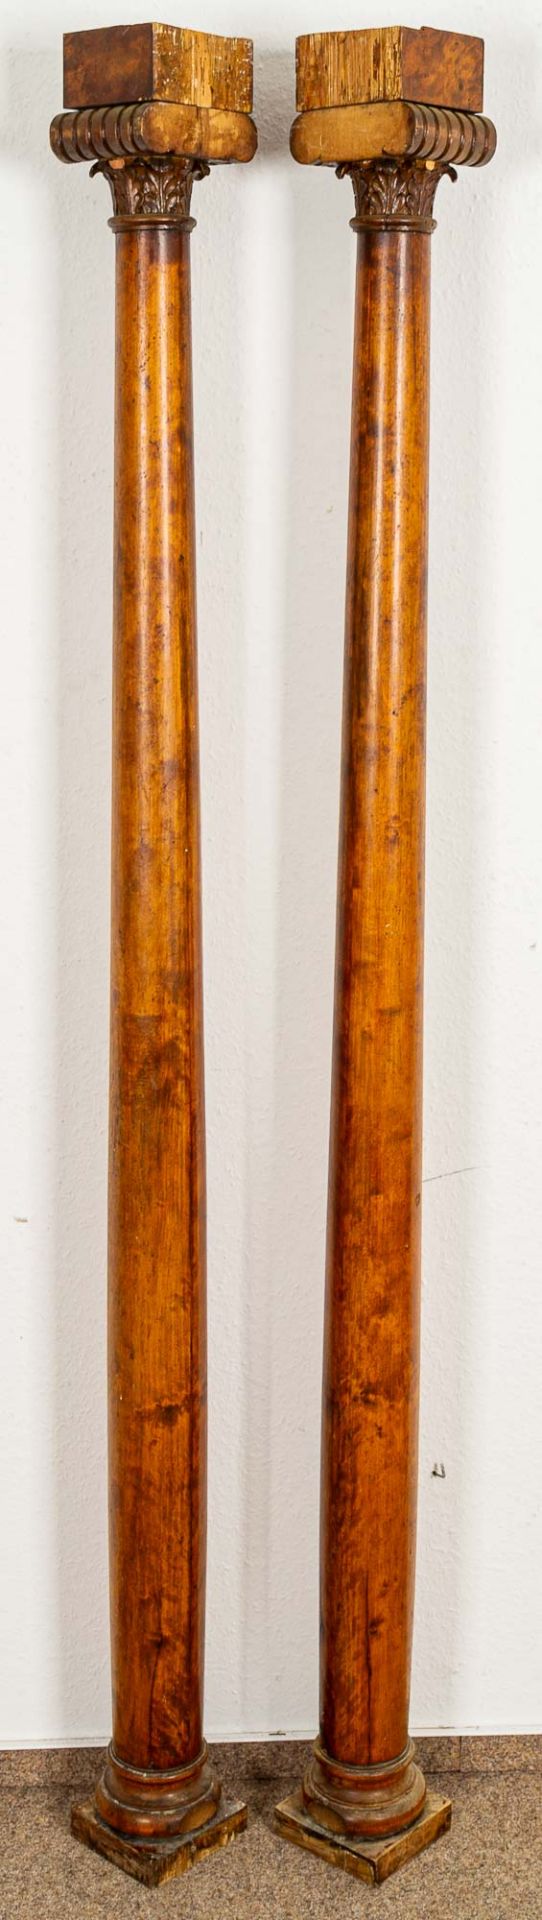 Paar Säulen in klassizistischer Manier, um 1800/20, Birke massiv und furniert, - Image 2 of 13